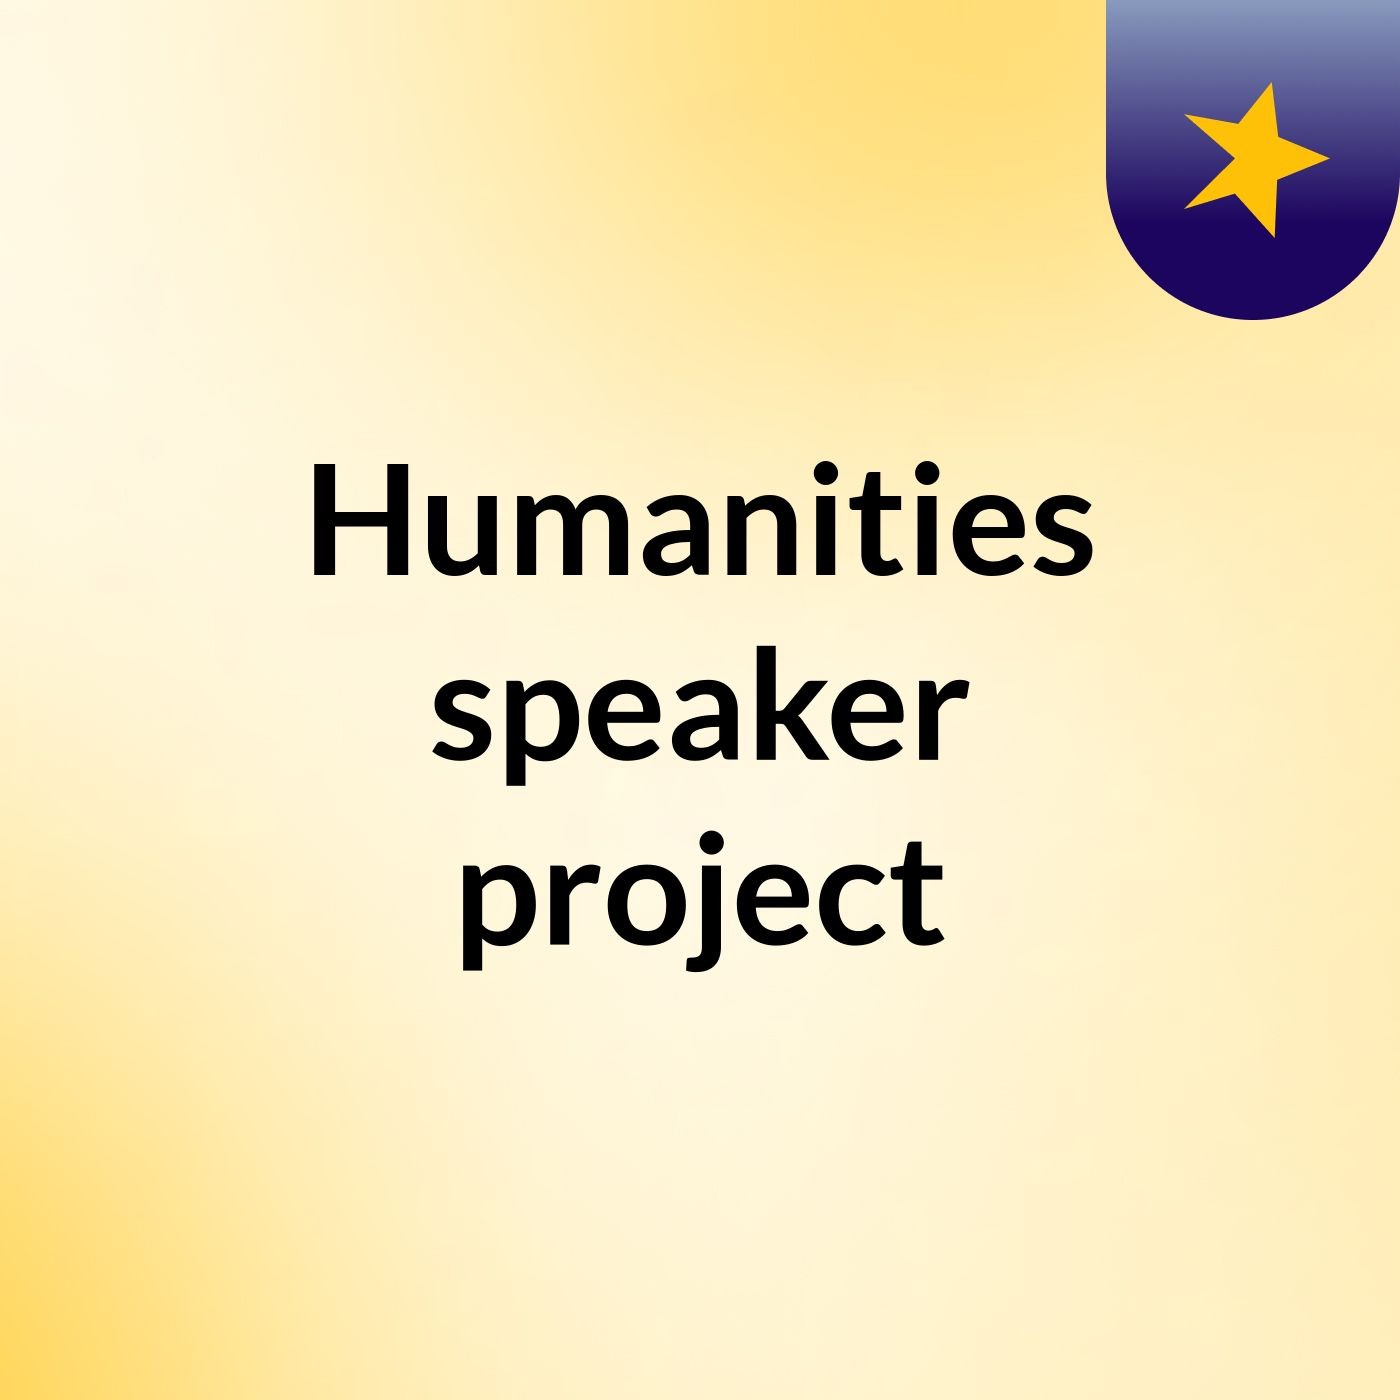 Humanities speaker project